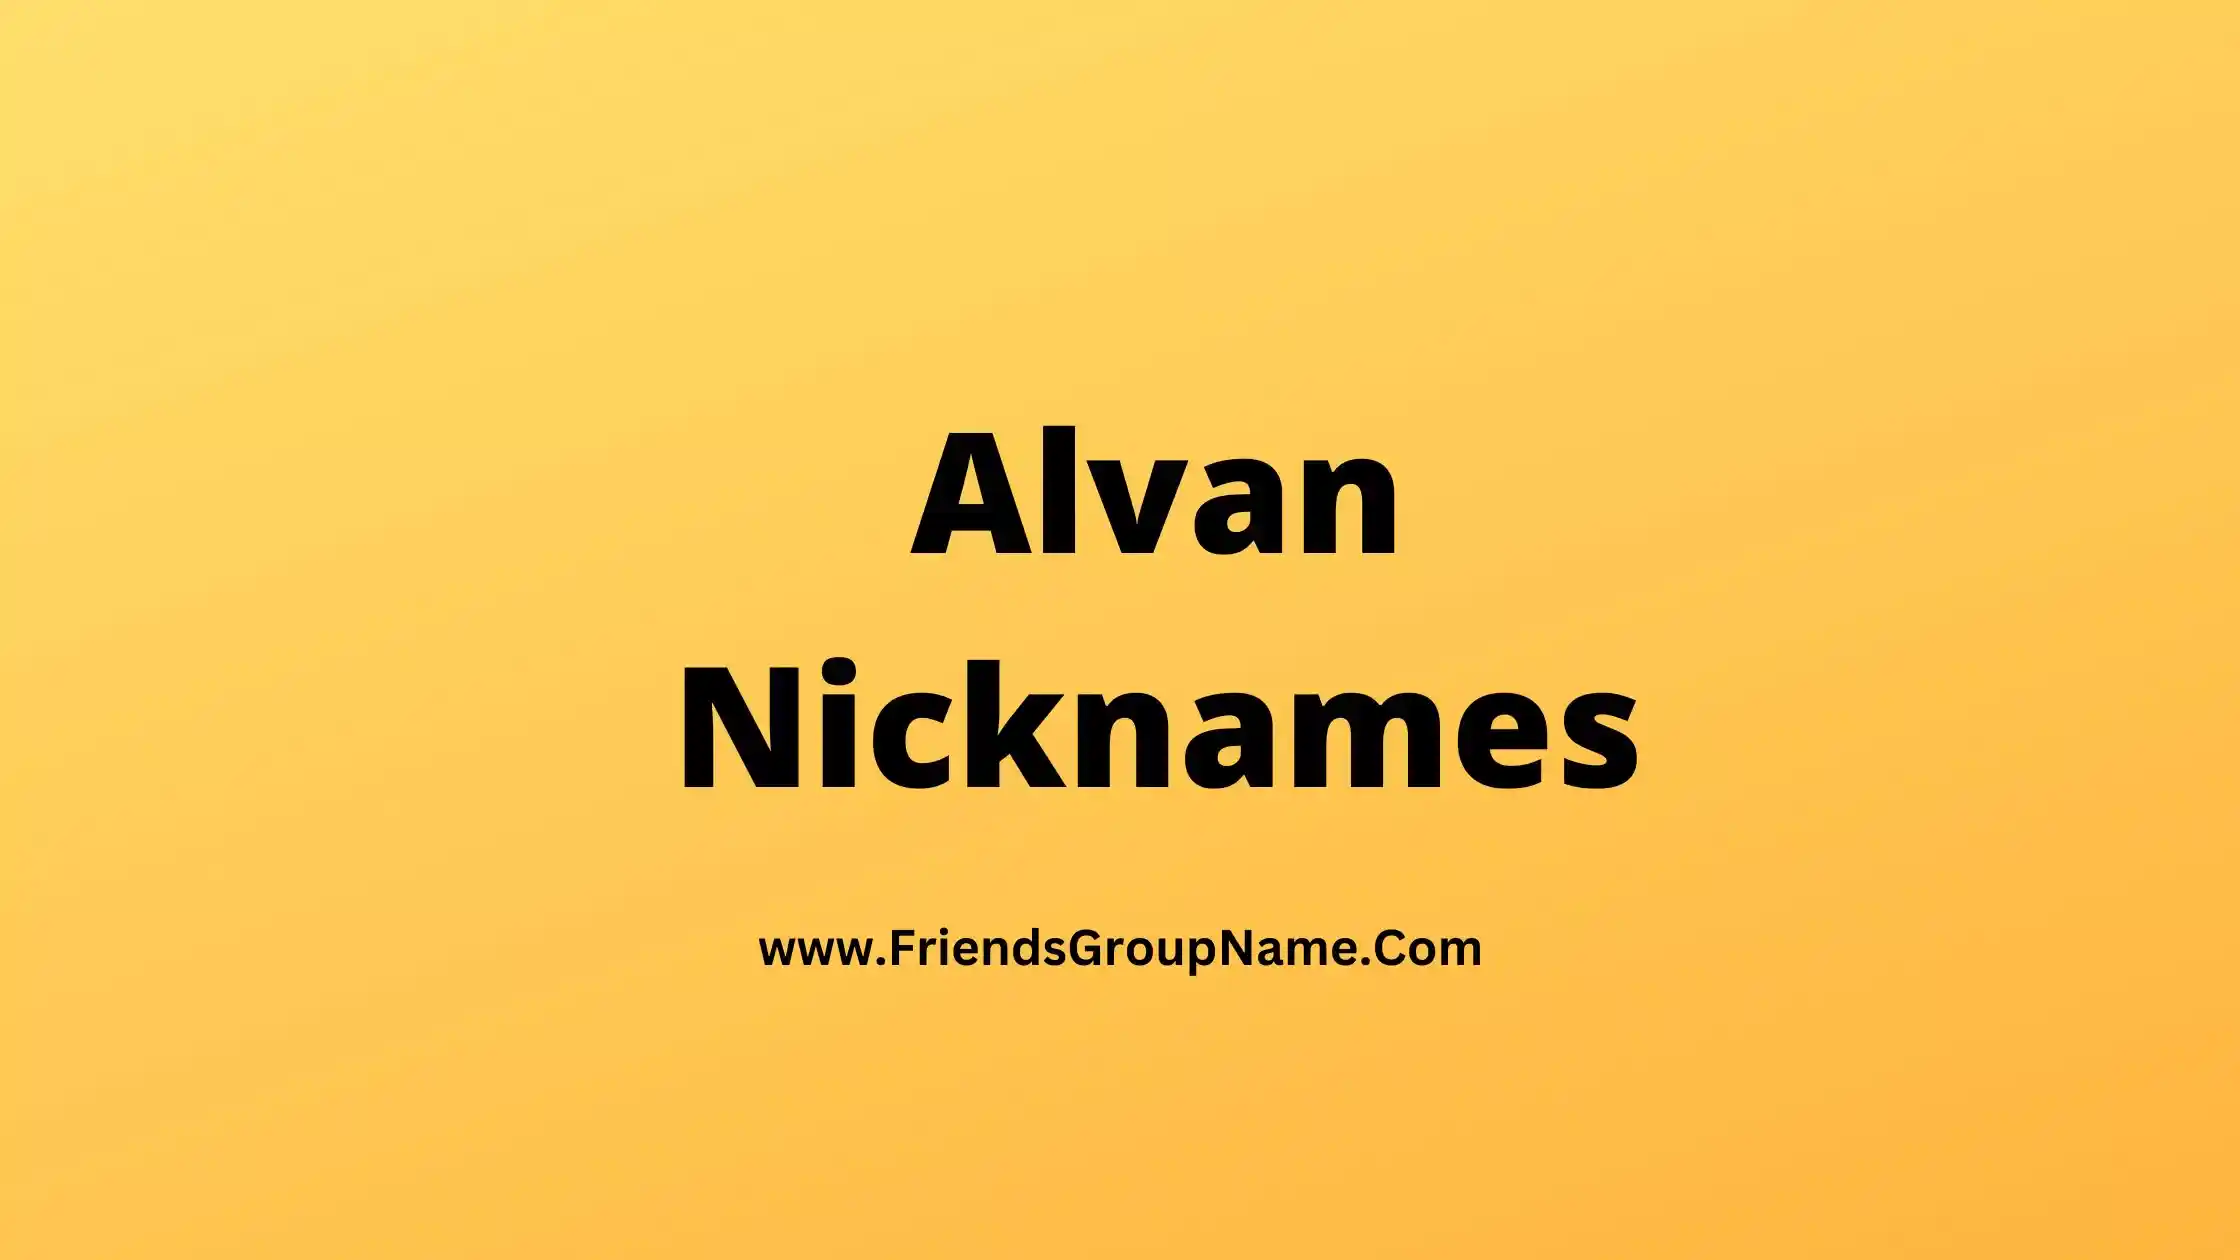 Alvan Nicknames